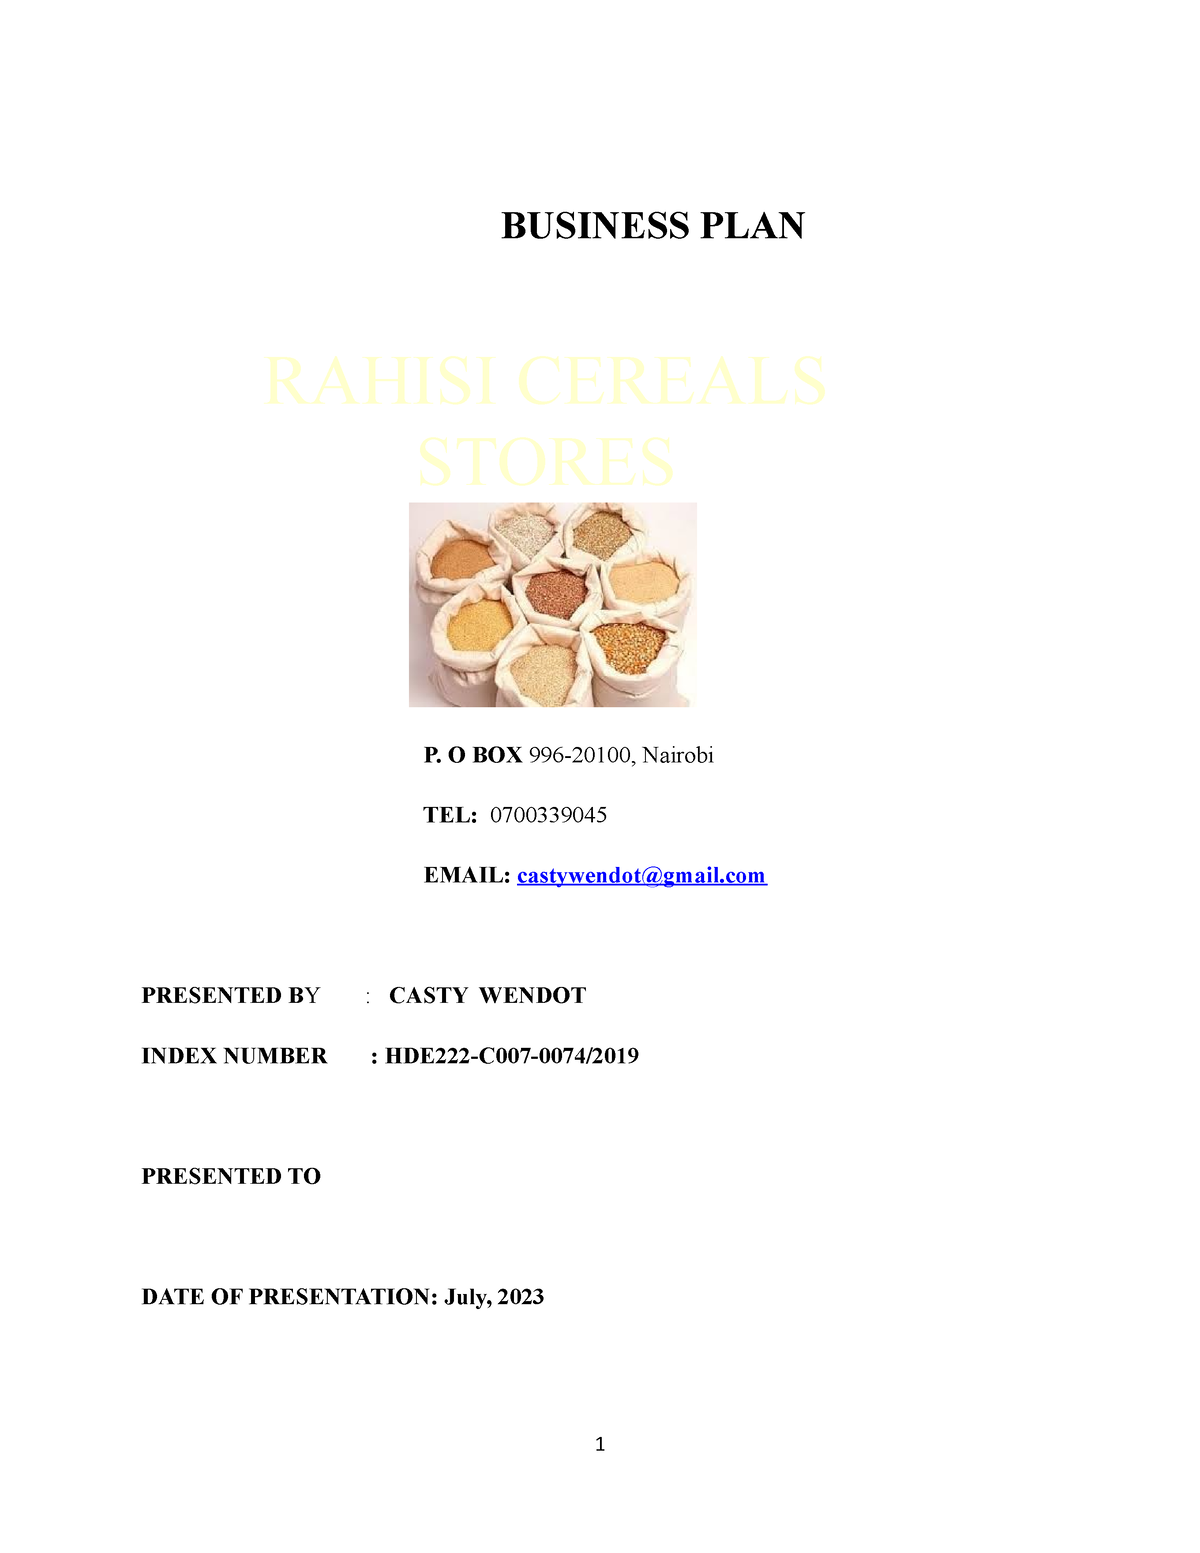 jkuat business plan sample